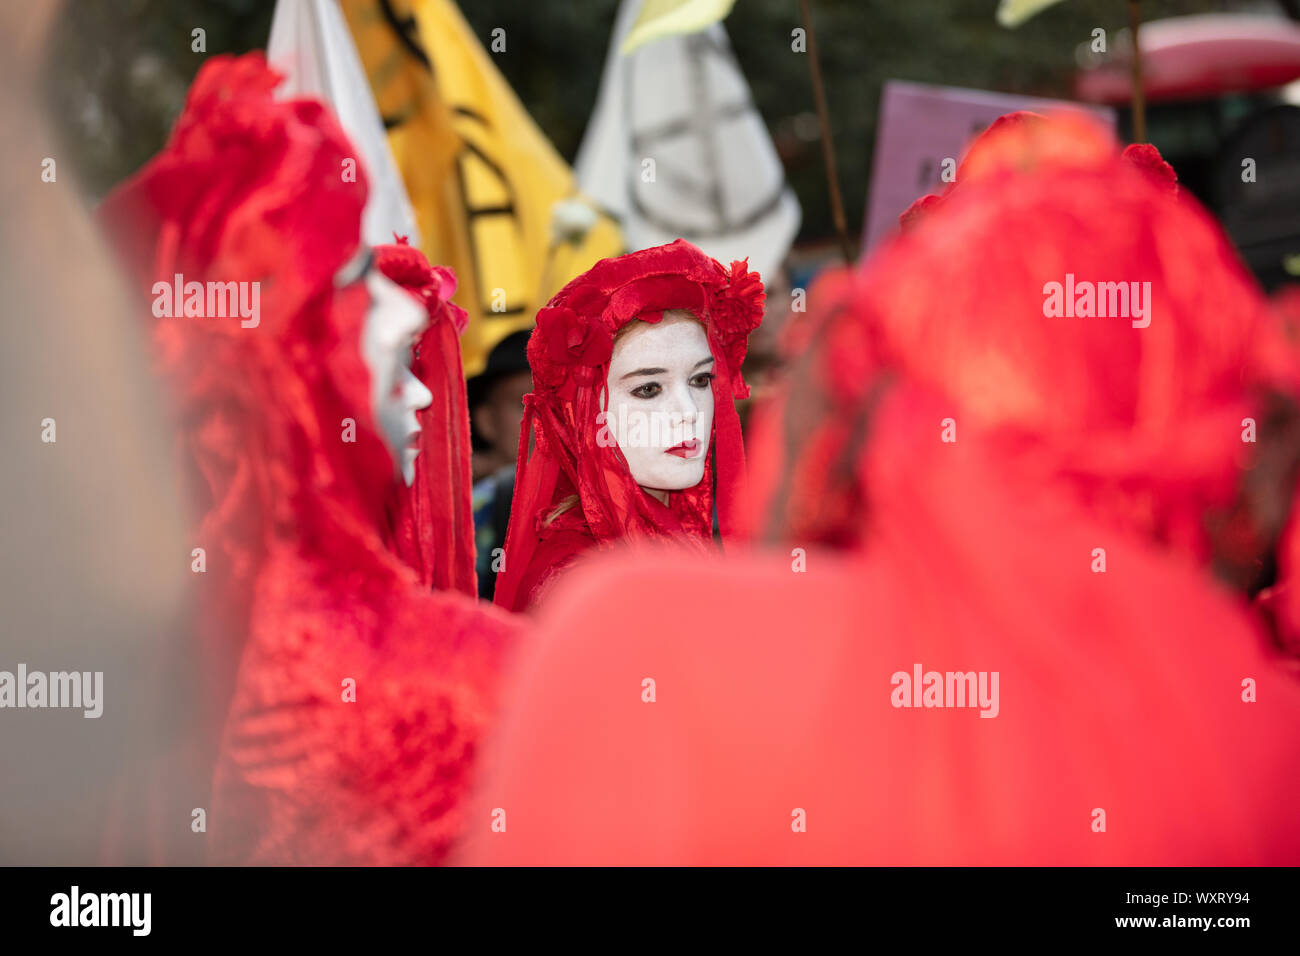 Londres, Royaume-Uni. 17 Septembre, 2019. Rébellion Extinction organisé une manifestation de protestation à la London Fashion Week, ici vu Créativité et imagination sont les robes rouge et blanc fait face à des rebelles en dehors de la Brigade rouge lieu de la mode. Crédit : Joe Keurig / Alamy News Banque D'Images